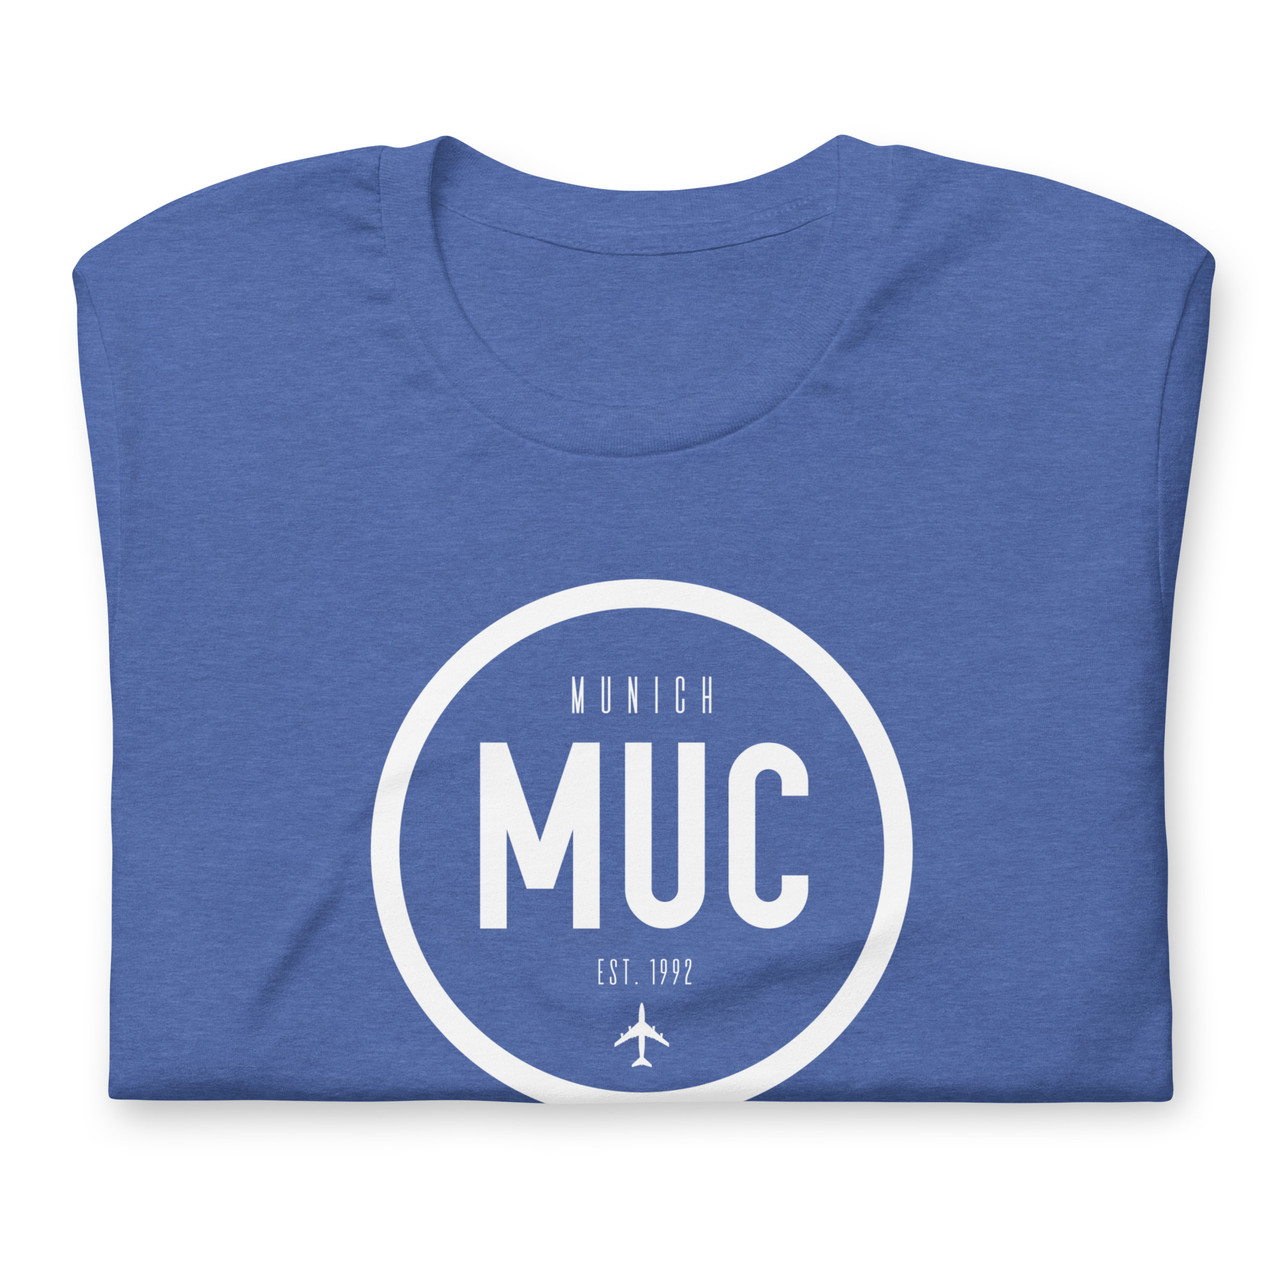 MUC - Munich (@MUC) / X